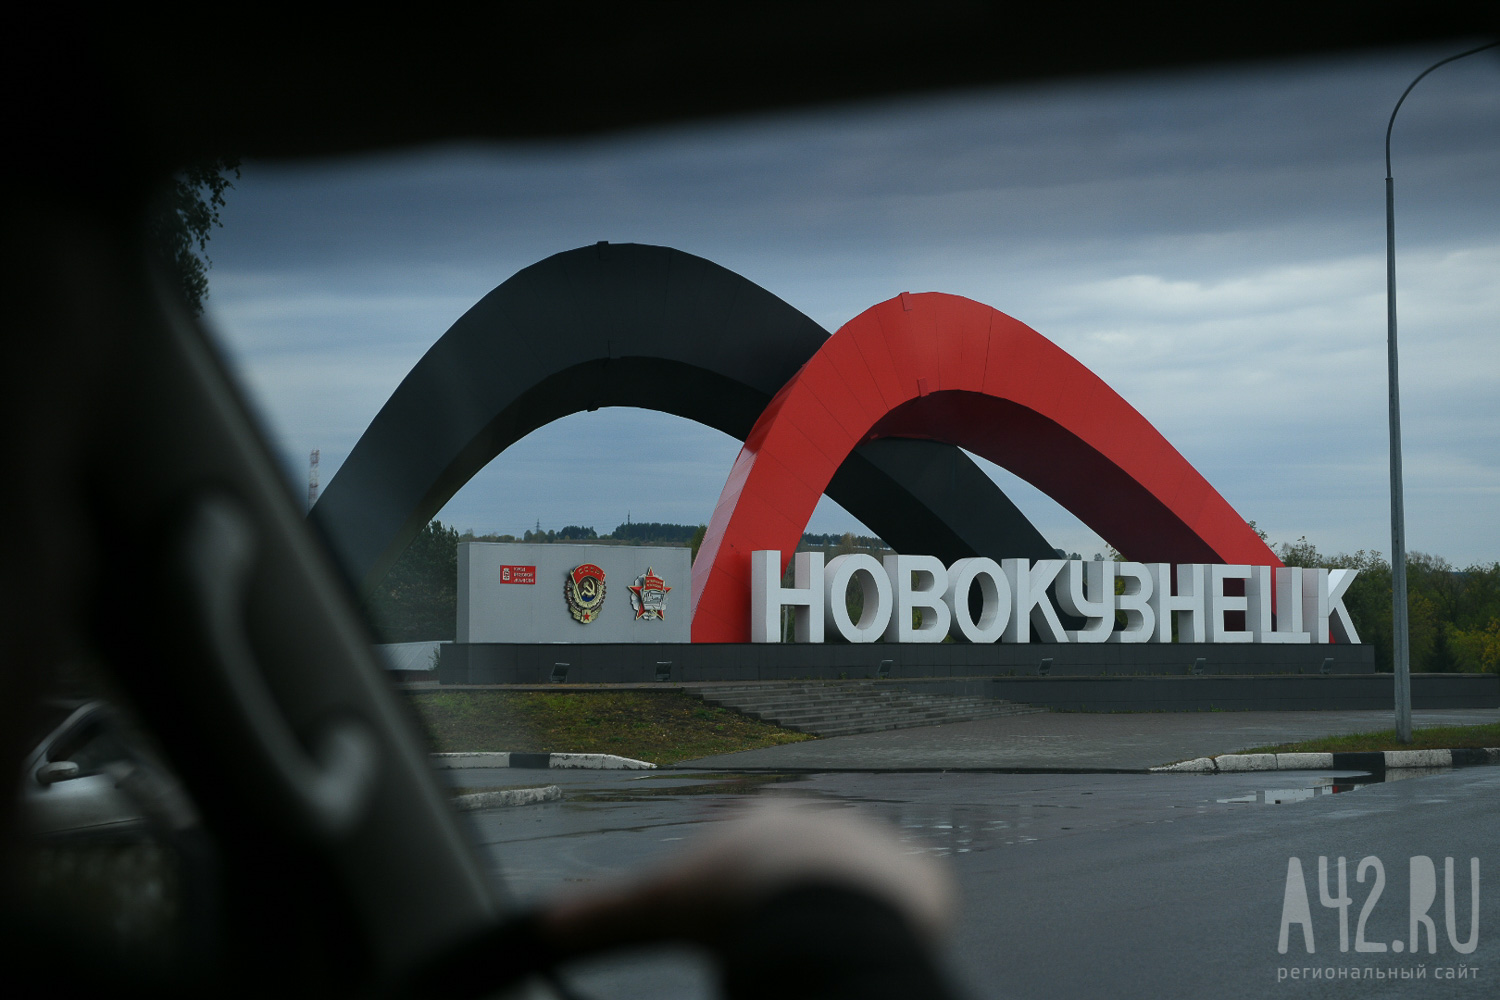 Более 72 млн рублей пойдут на ремонт участка дороги в Новокузнецке 